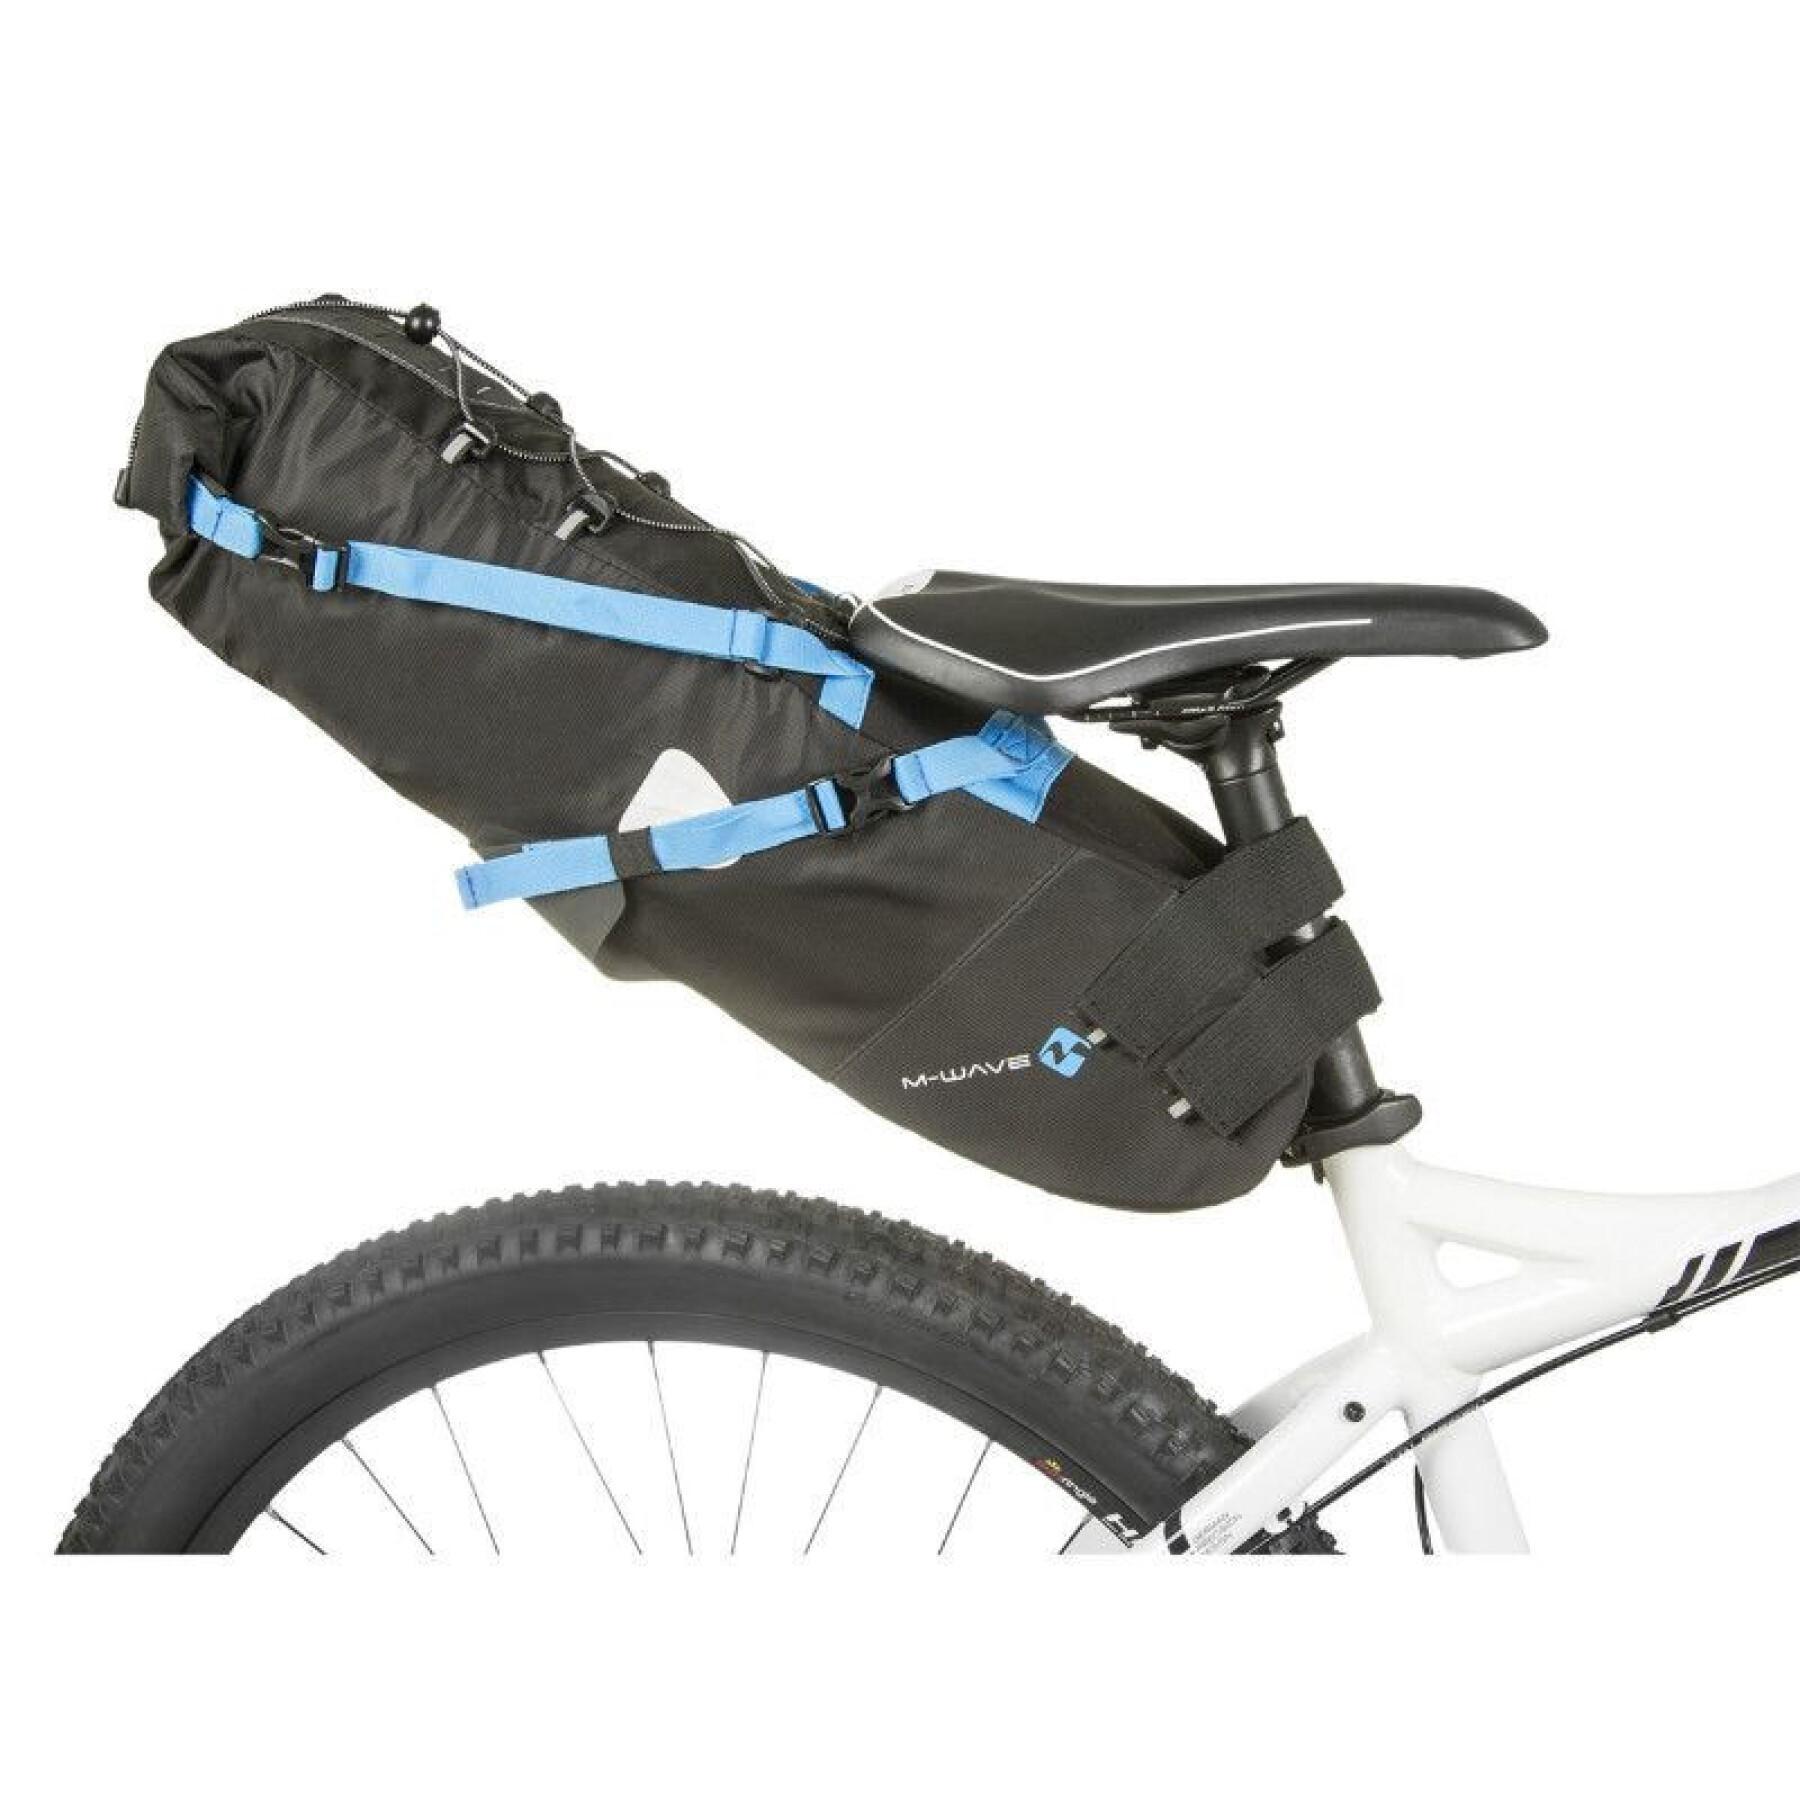 Bolsa impermeable para sillín de bicicleta con cierre de velcro P2R 50 x 15 x 15 cm 5kgs